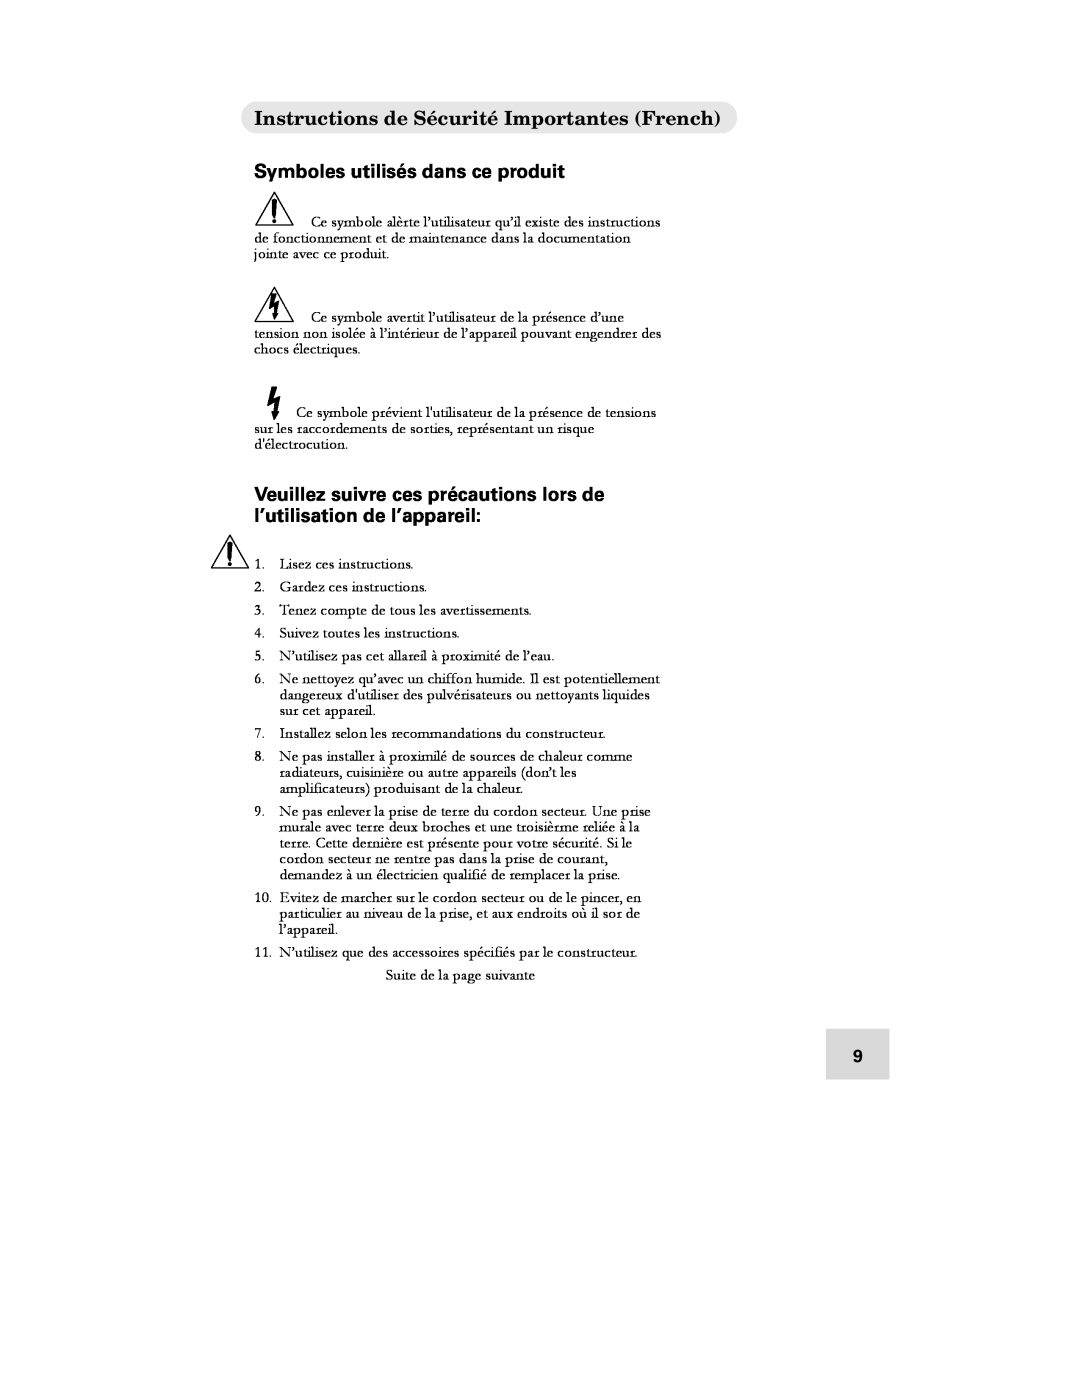 Alesis DEQ230D manual Instructions de Sécurité Importantes French, Symboles utilisés dans ce produit 